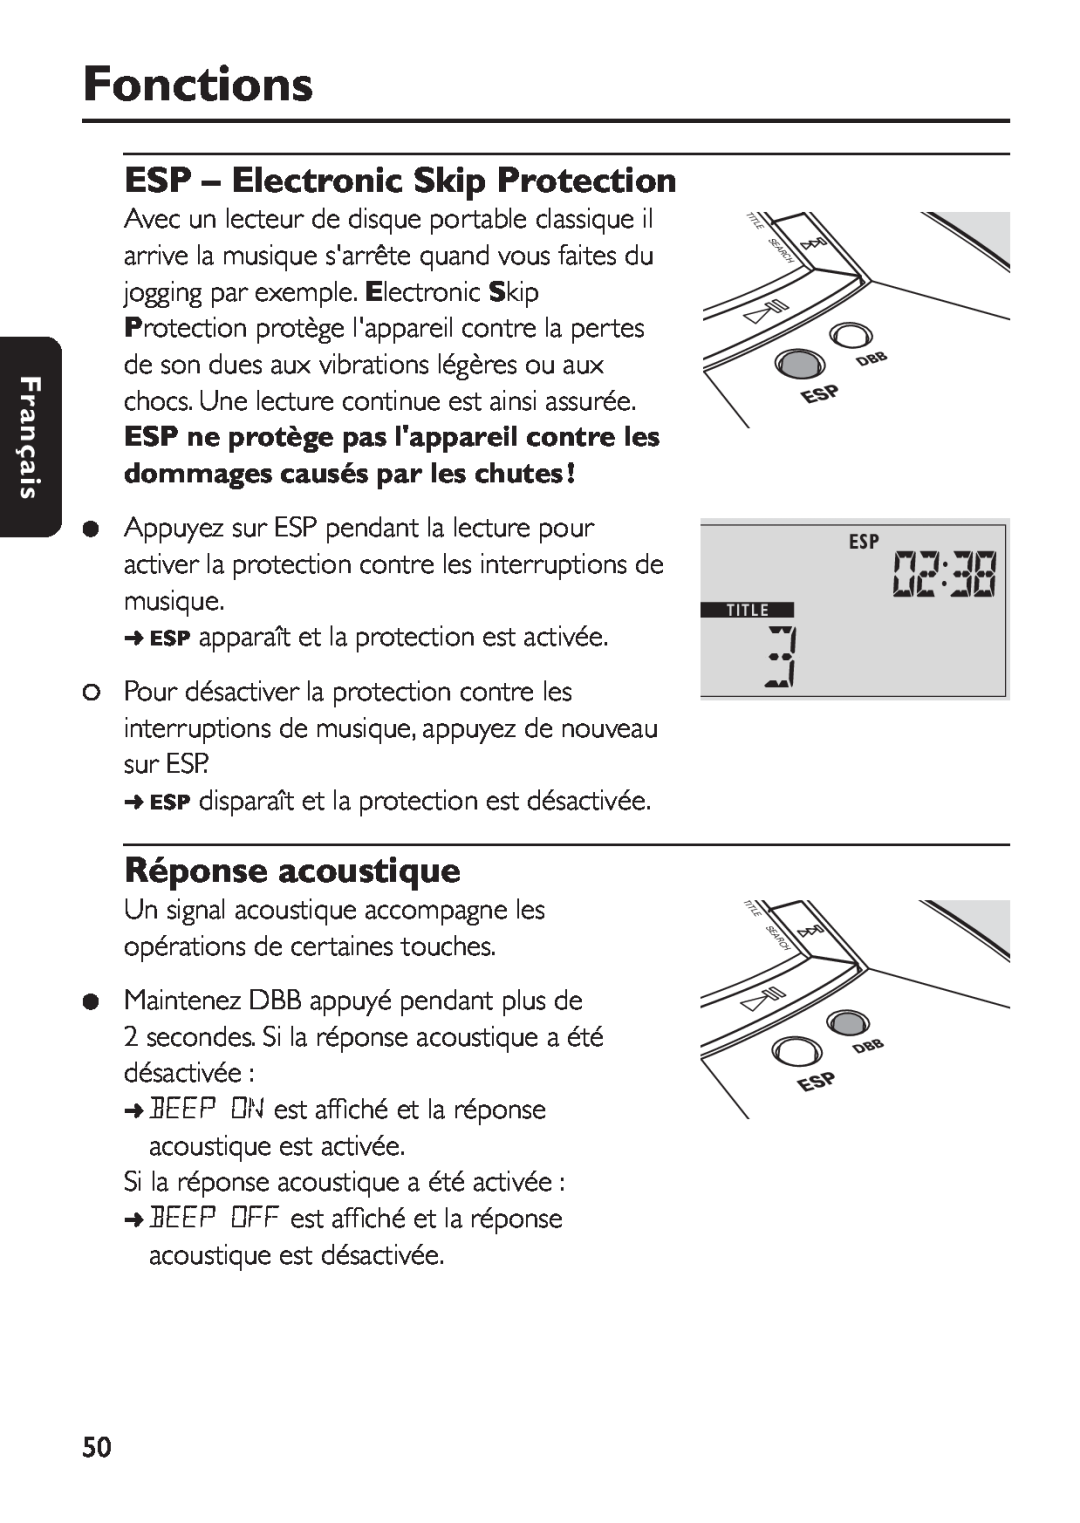 Philips EXP 501/00 manual Réponse acoustique, Fonctions, ESP - Electronic Skip Protection, Français 